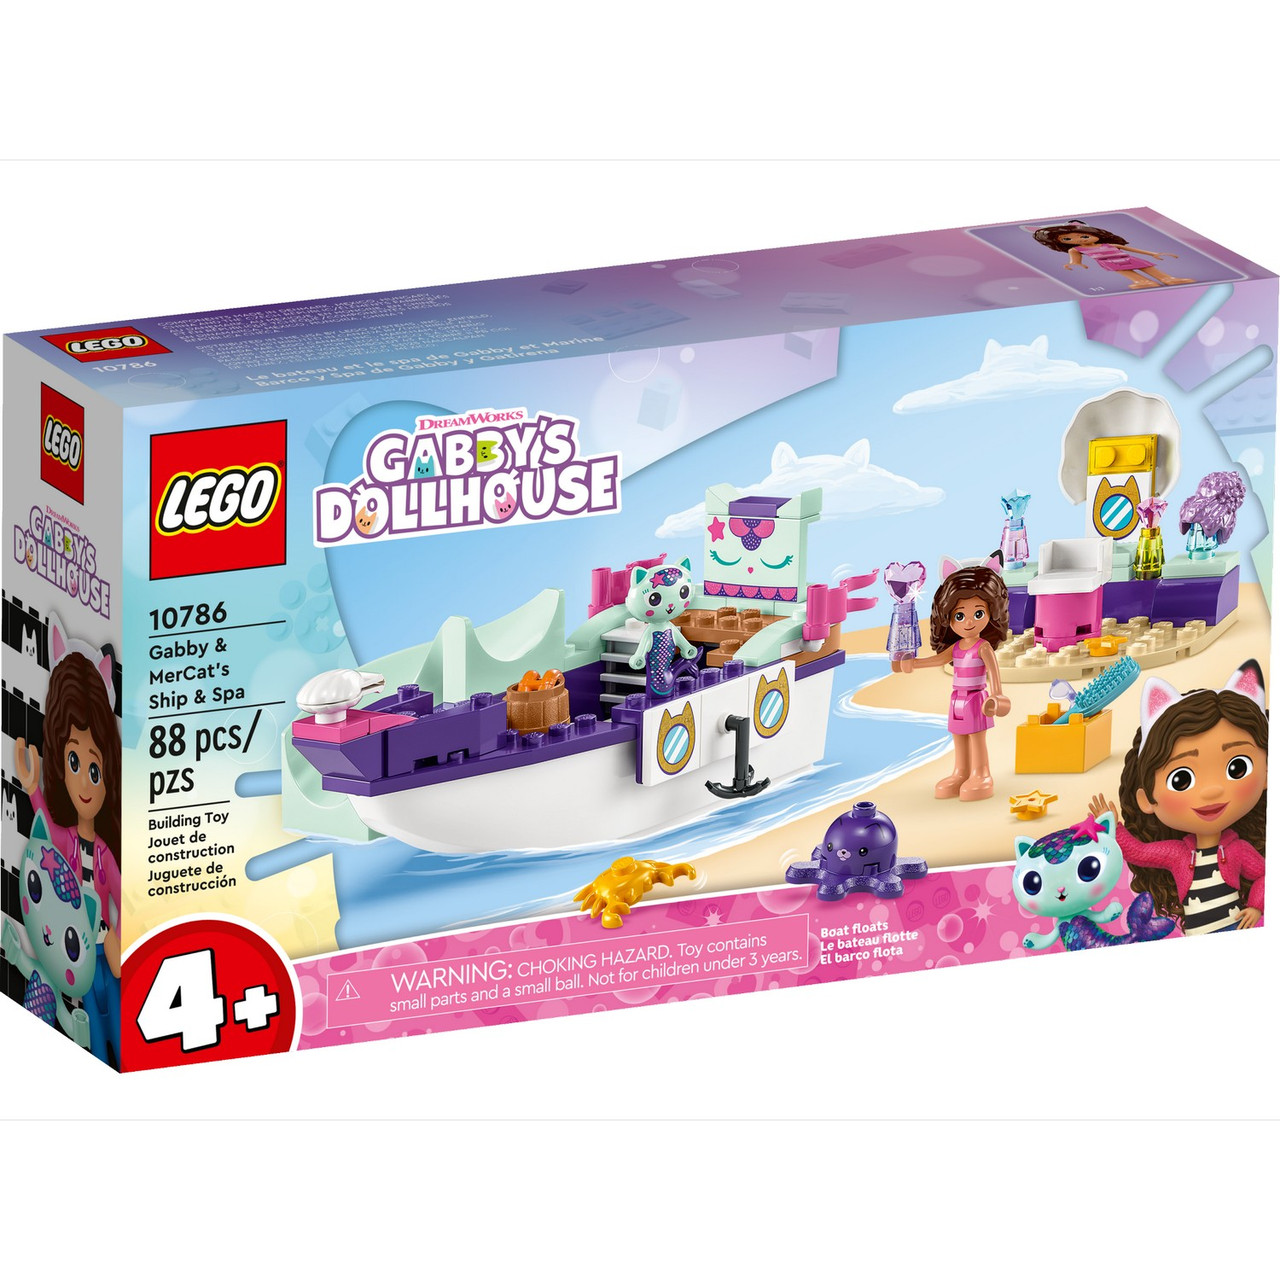 10786 Lego Gabby's DollHouse Корабль и спа Габби и МерКэта Лего Кукольный домик Габби